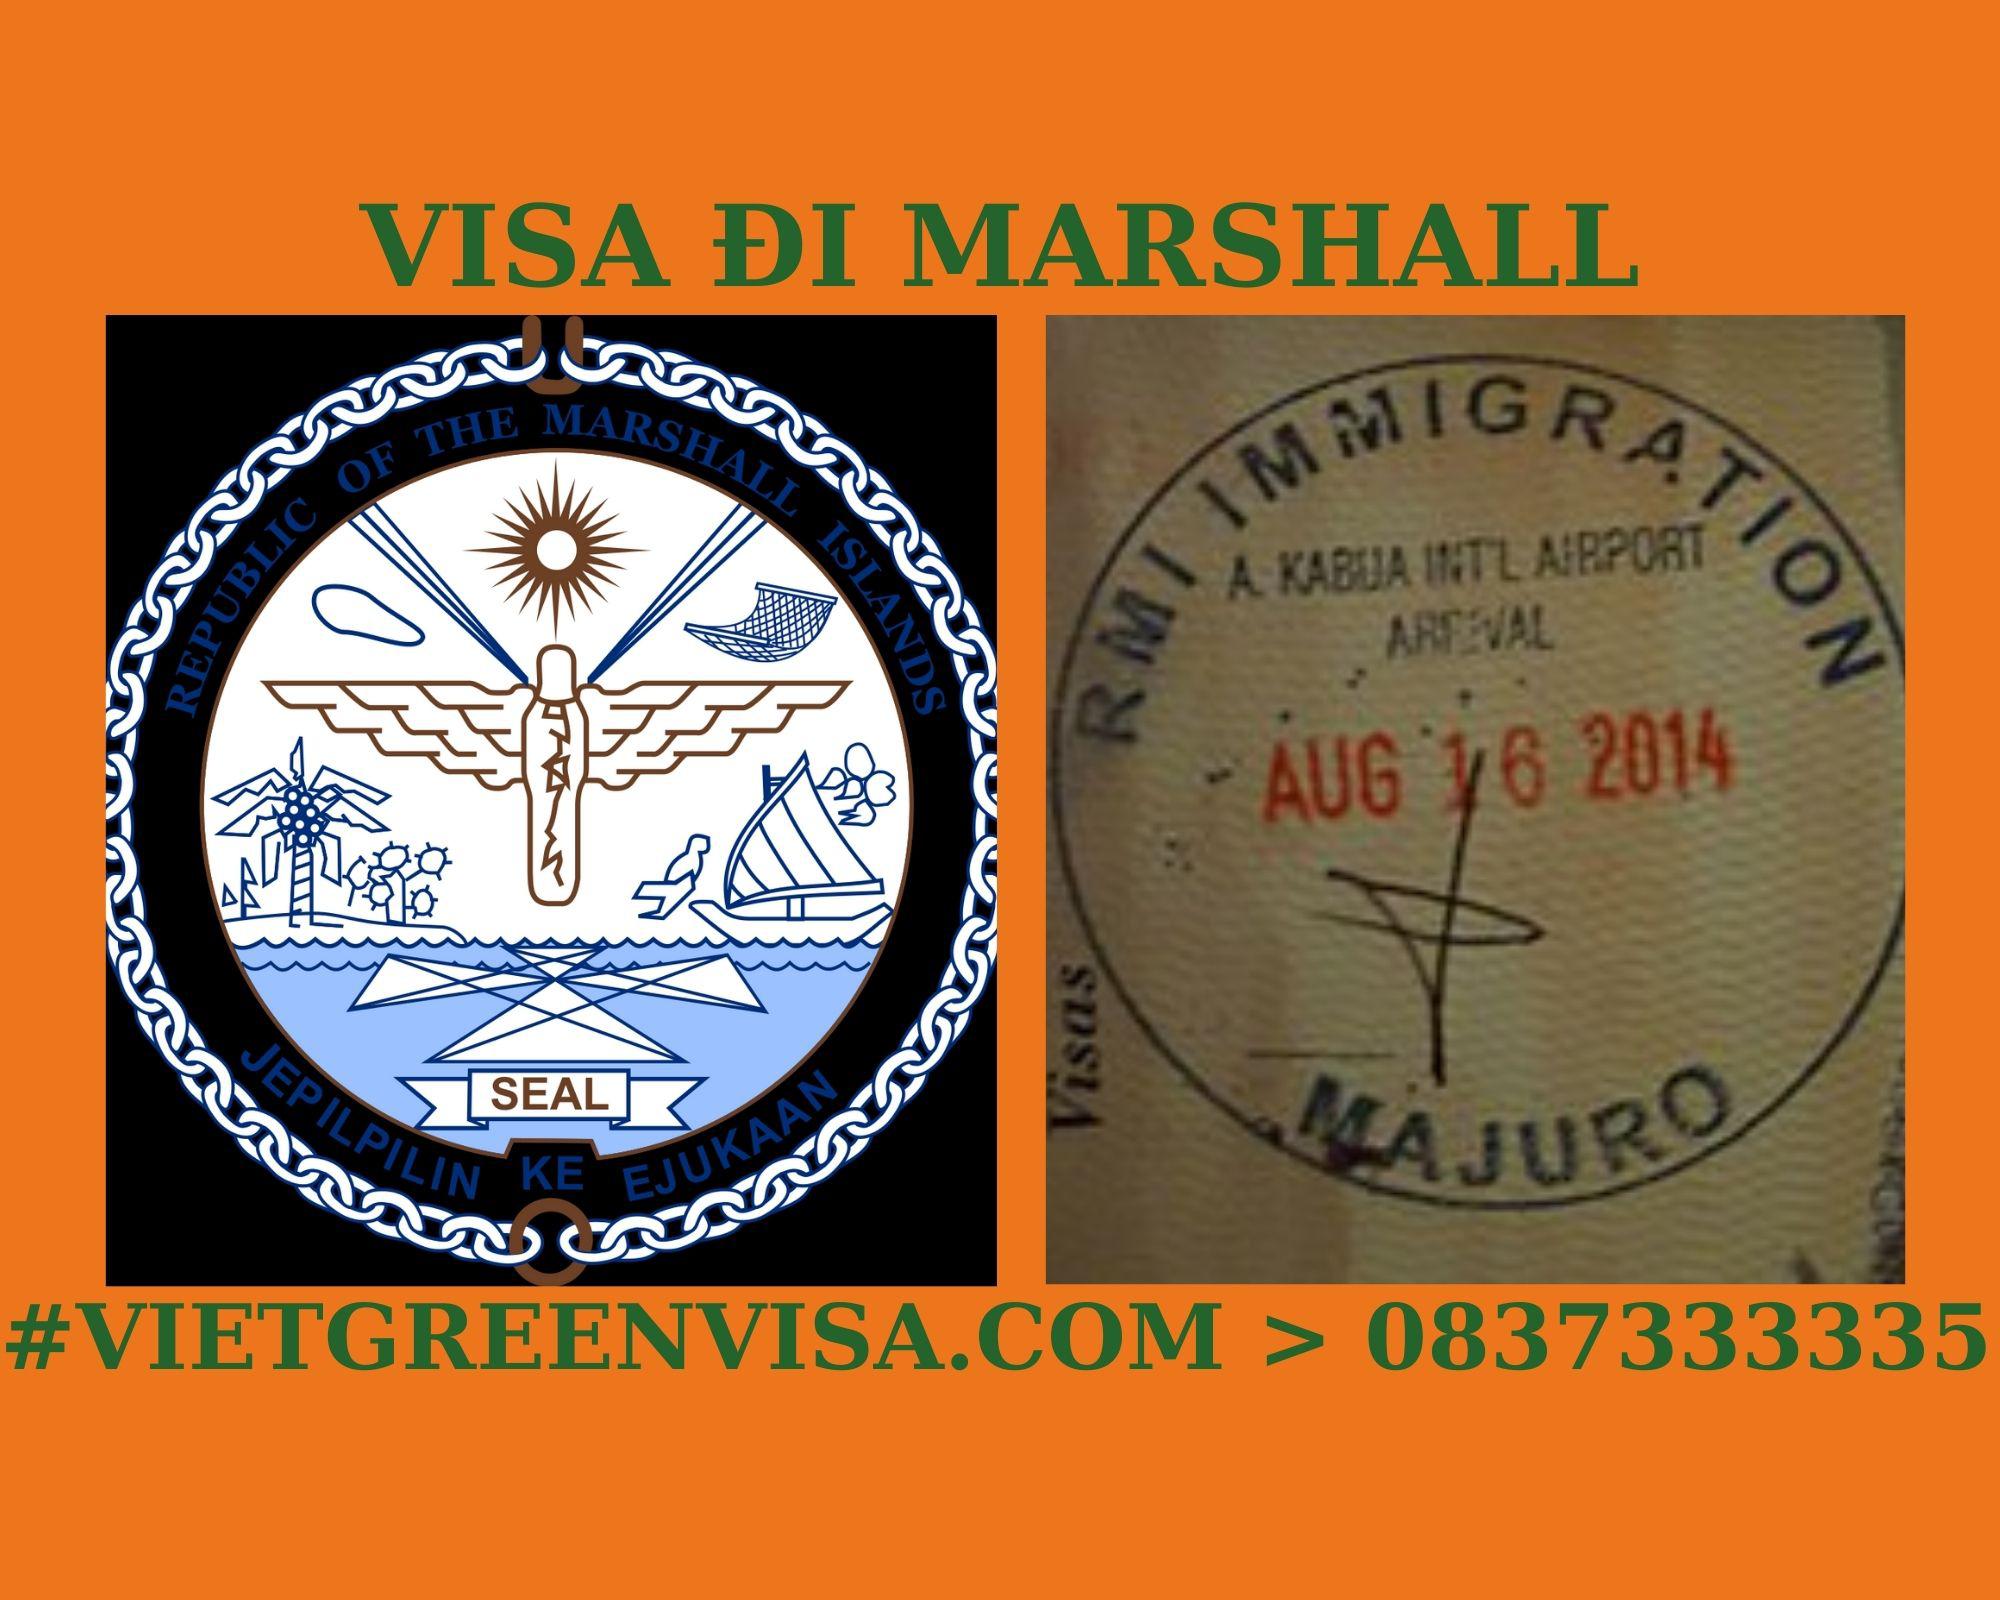 Làm Visa Marshall thăm thân uy tín, nhanh chóng, giá rẻ